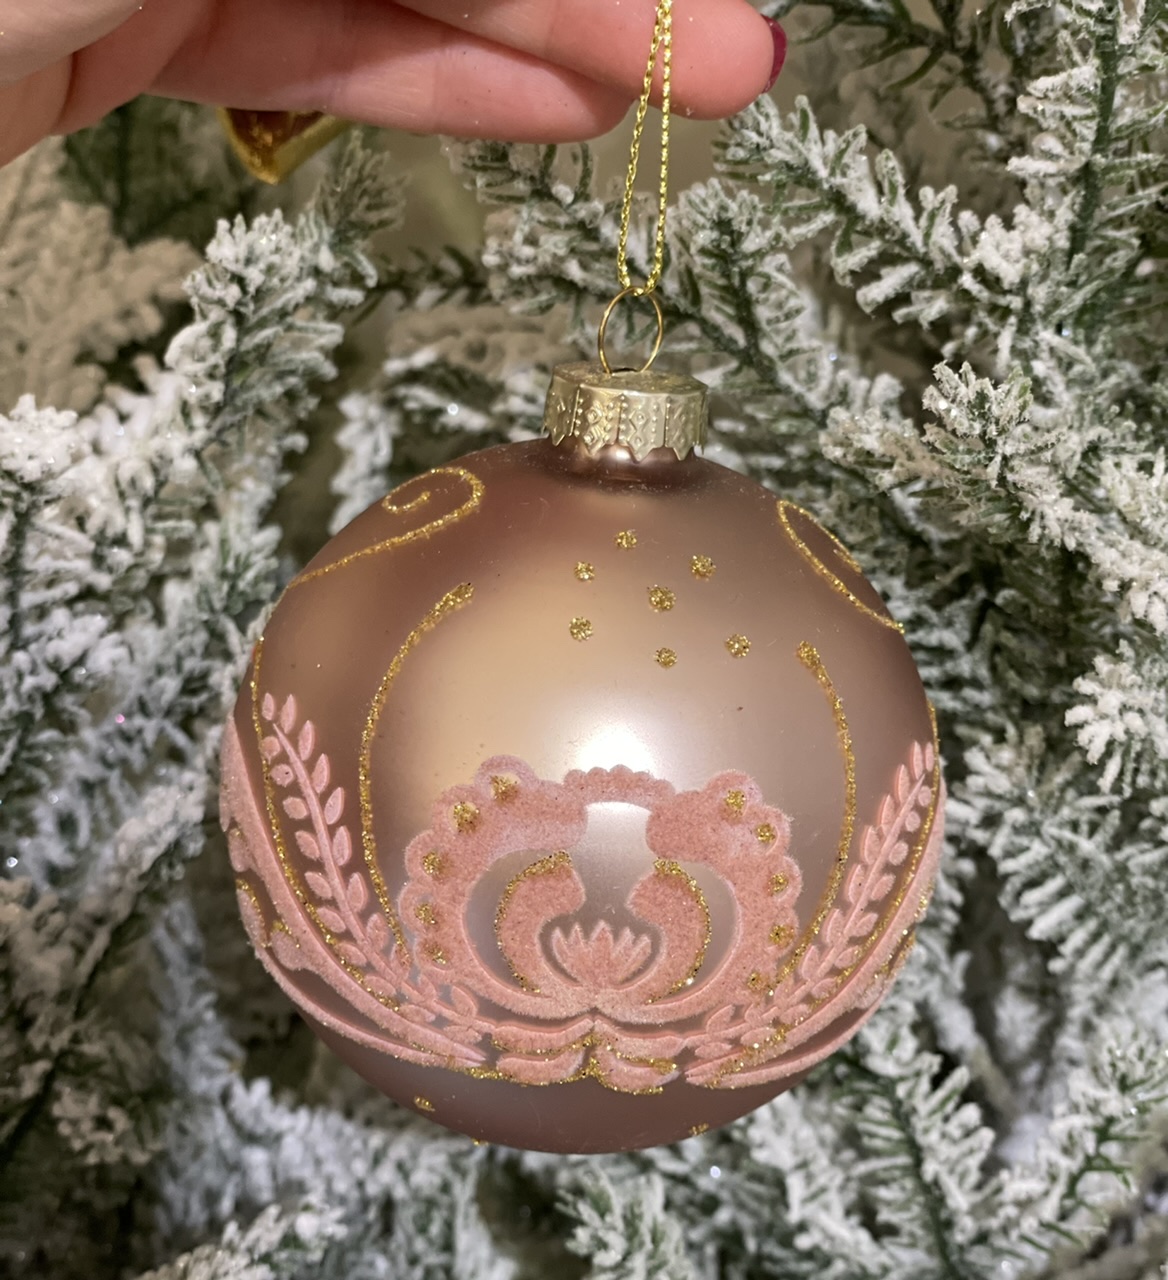 Appendino sfera con brillantini e decoro in velluto in rilievo -  vetro decoro natalizio - disponibile in due modelli assortiti - edg